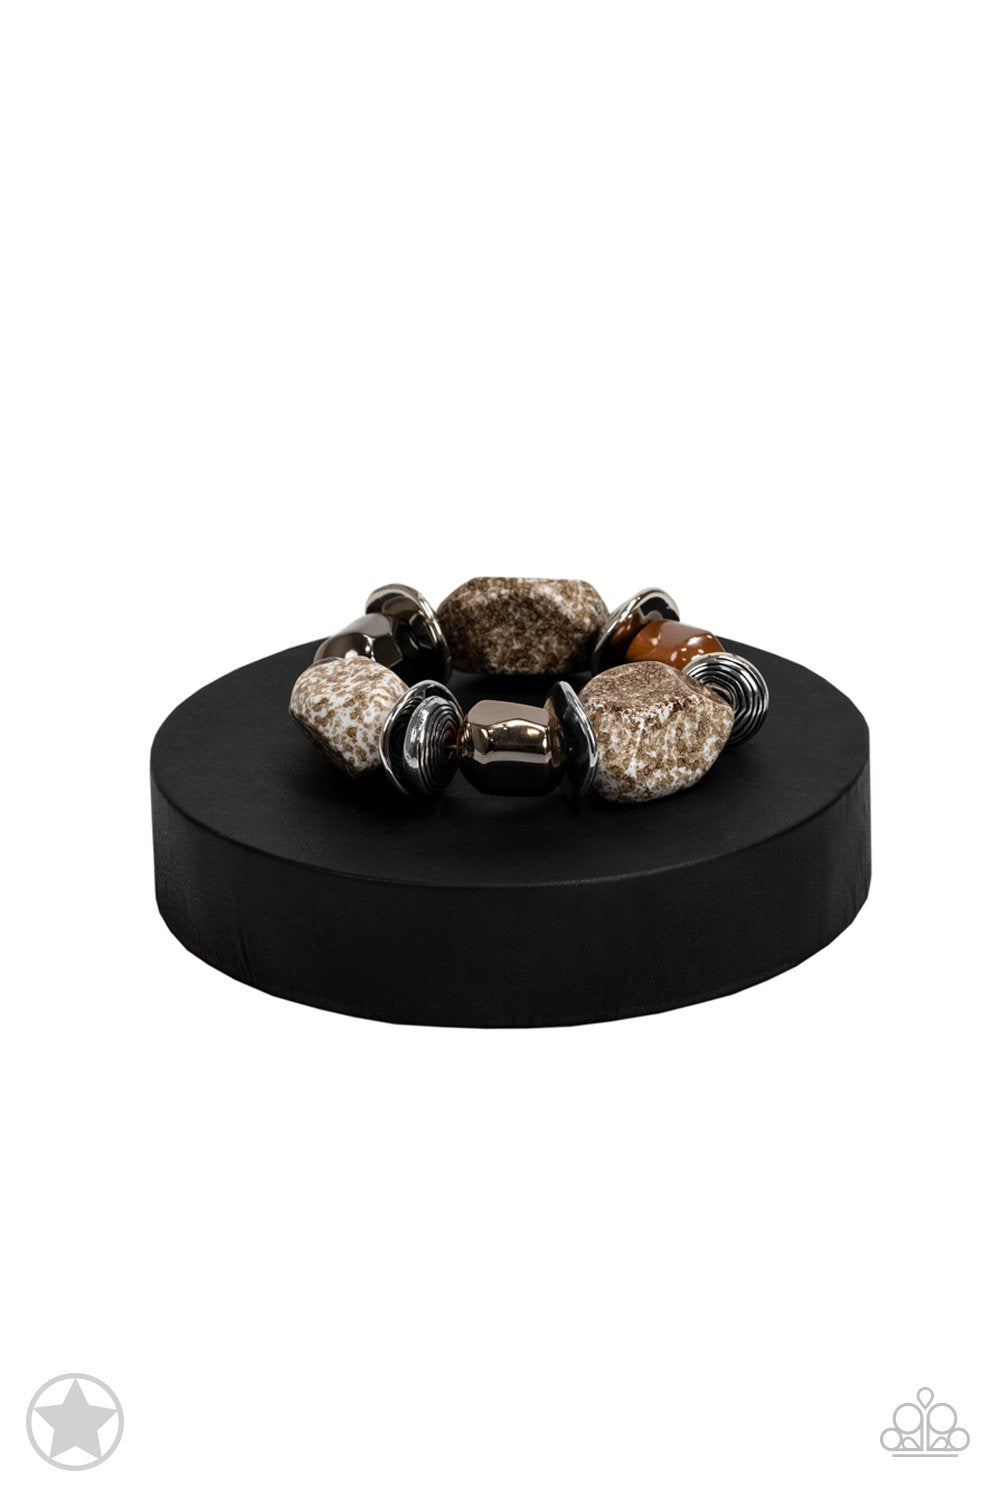 Glaze of Glory Peach Chunky Bead Stretch Bracelet - Paparazzi Accessories- on bust -CarasShop.com - $5 Jewelry by Cara Jewels